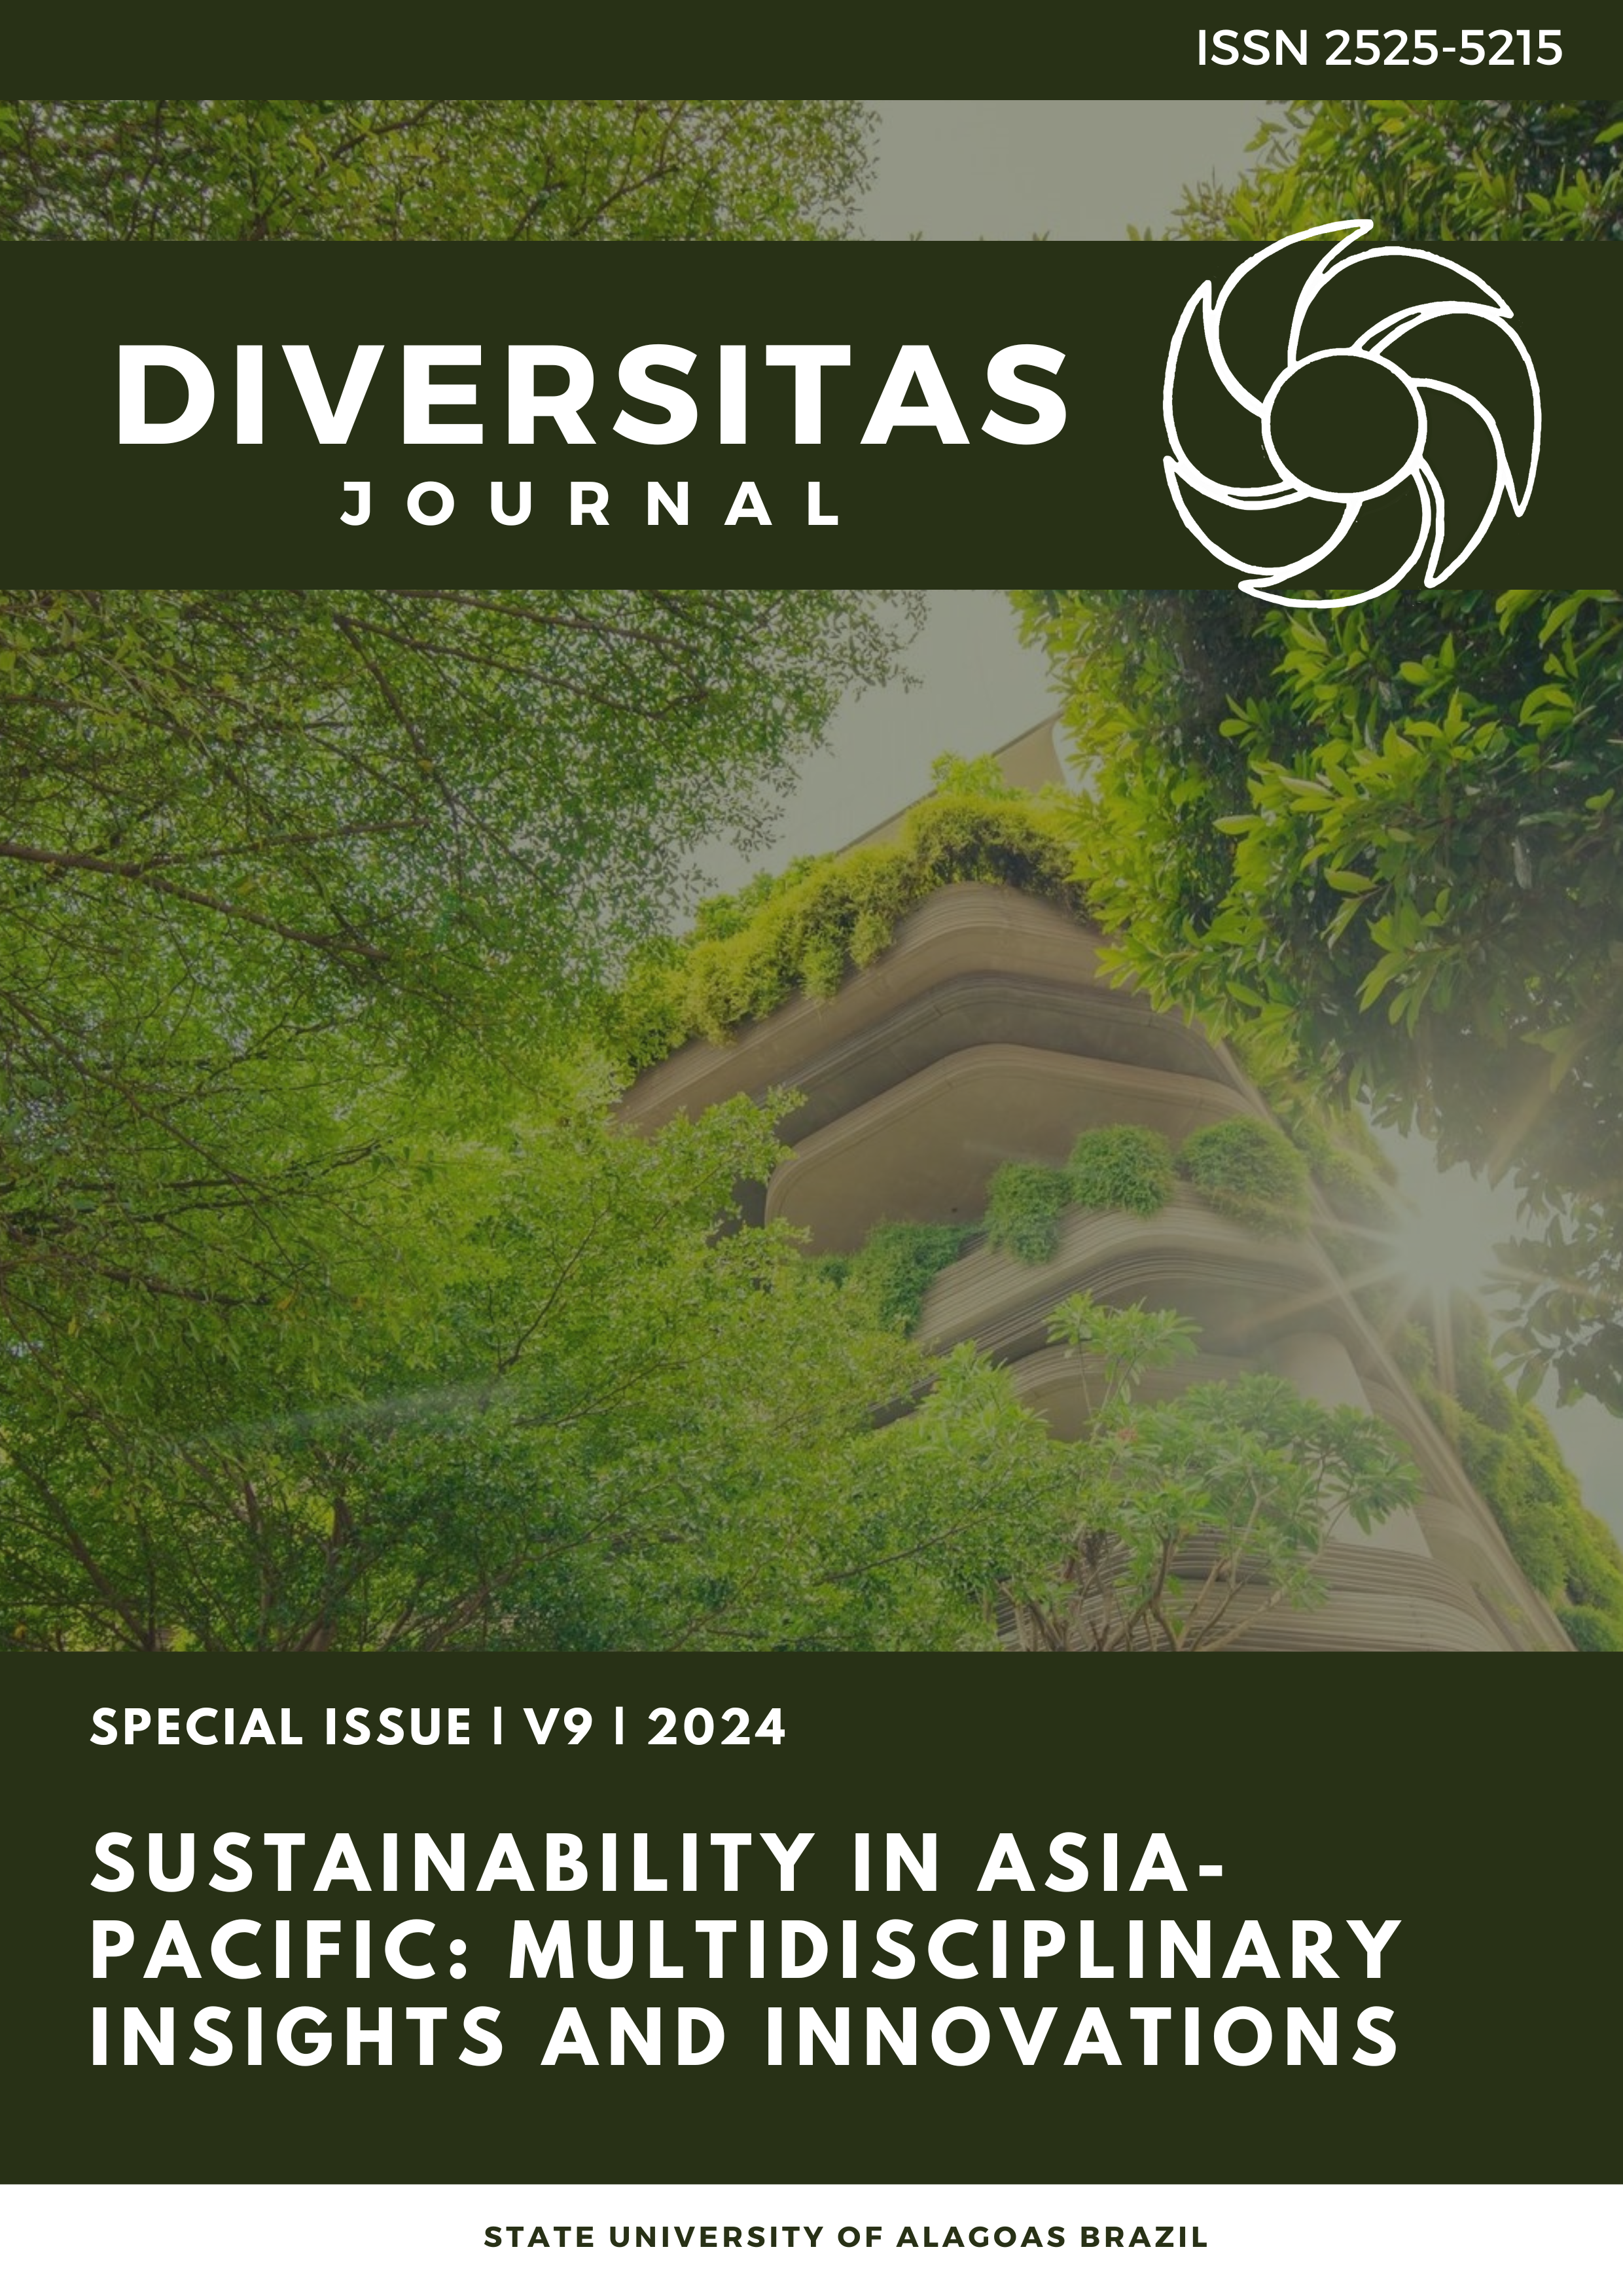 					Ver Vol. 9 Núm. 1_Special (2024): Sostenibilidad en Asia-Pacífico: ideas e innovaciones multidisciplinarias
				